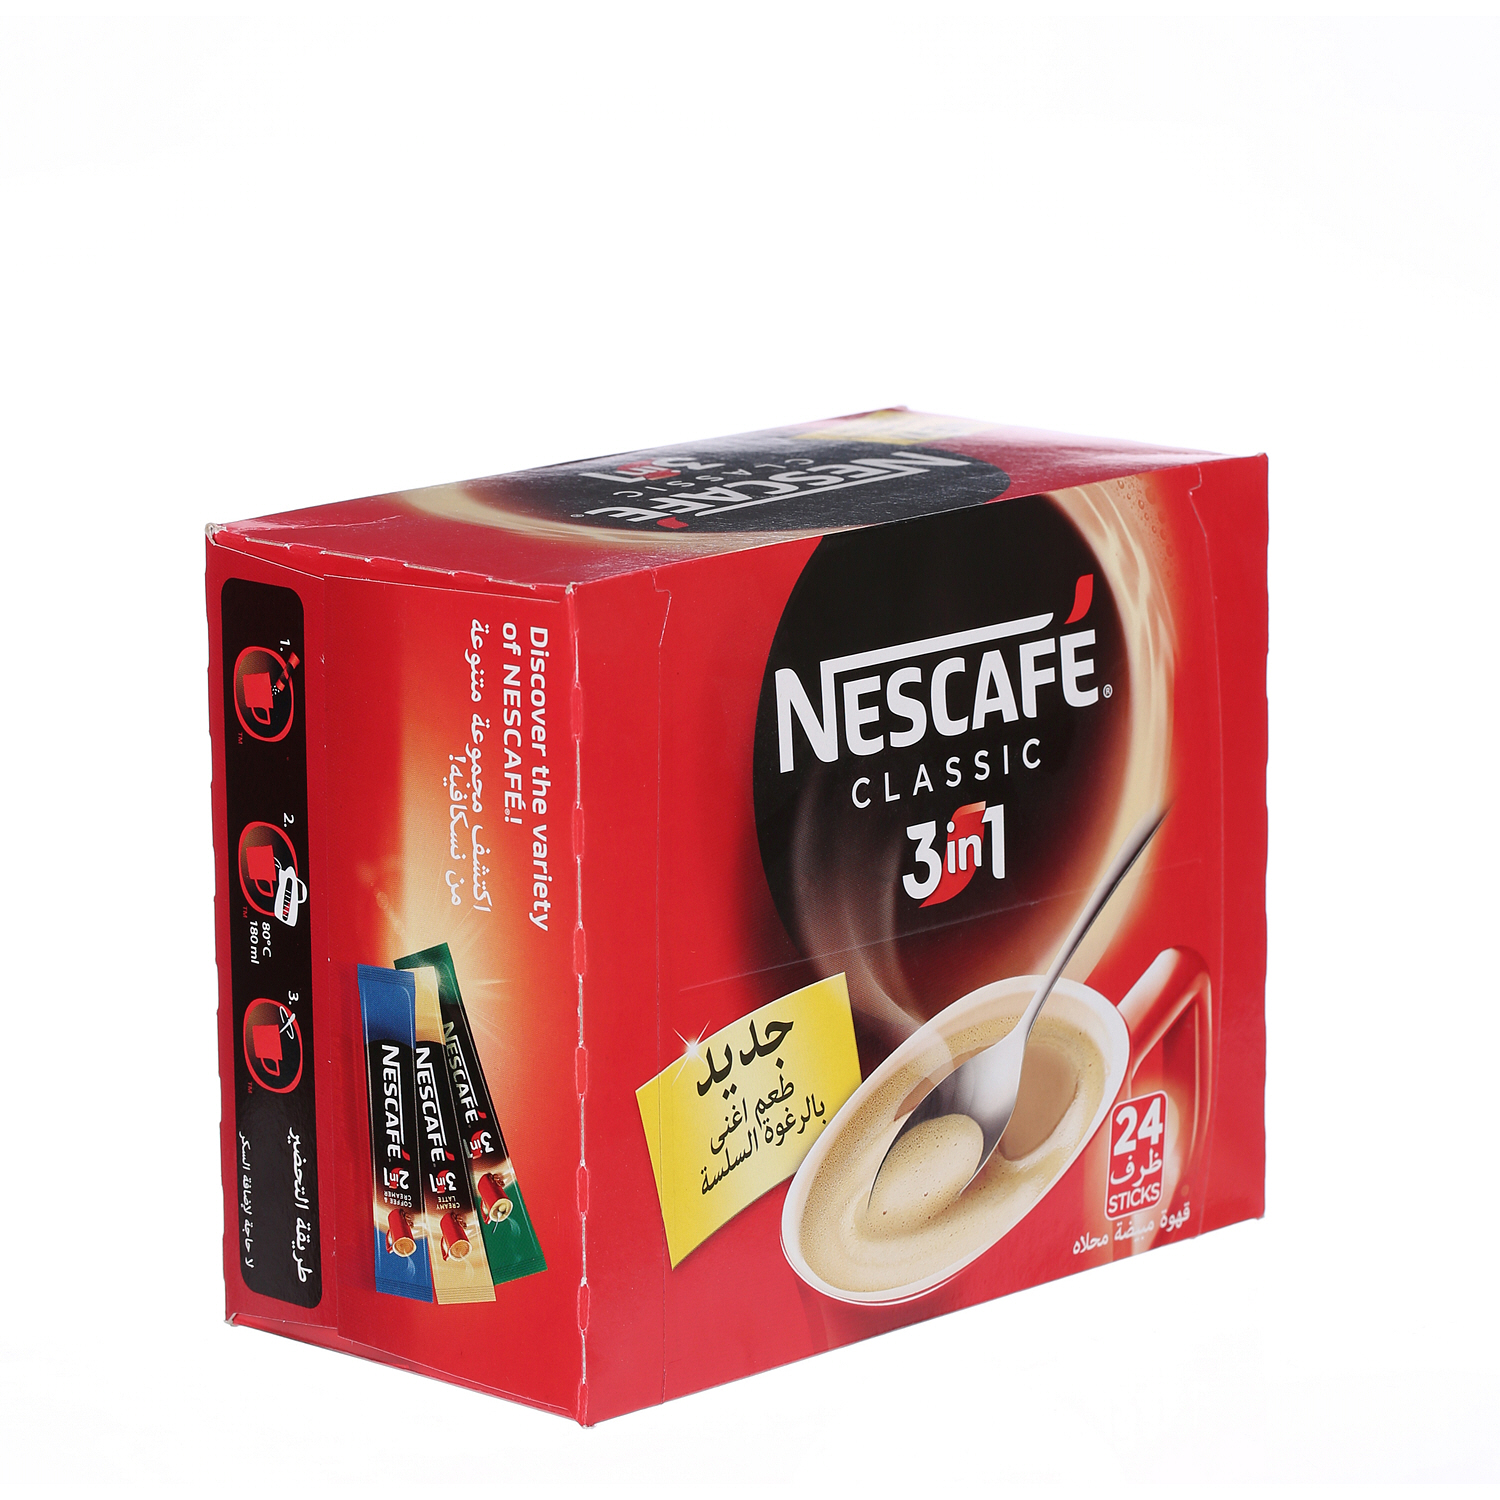 Nescafe 3 in 1 Classic Coffee Sticks 20 g × 24 Pack